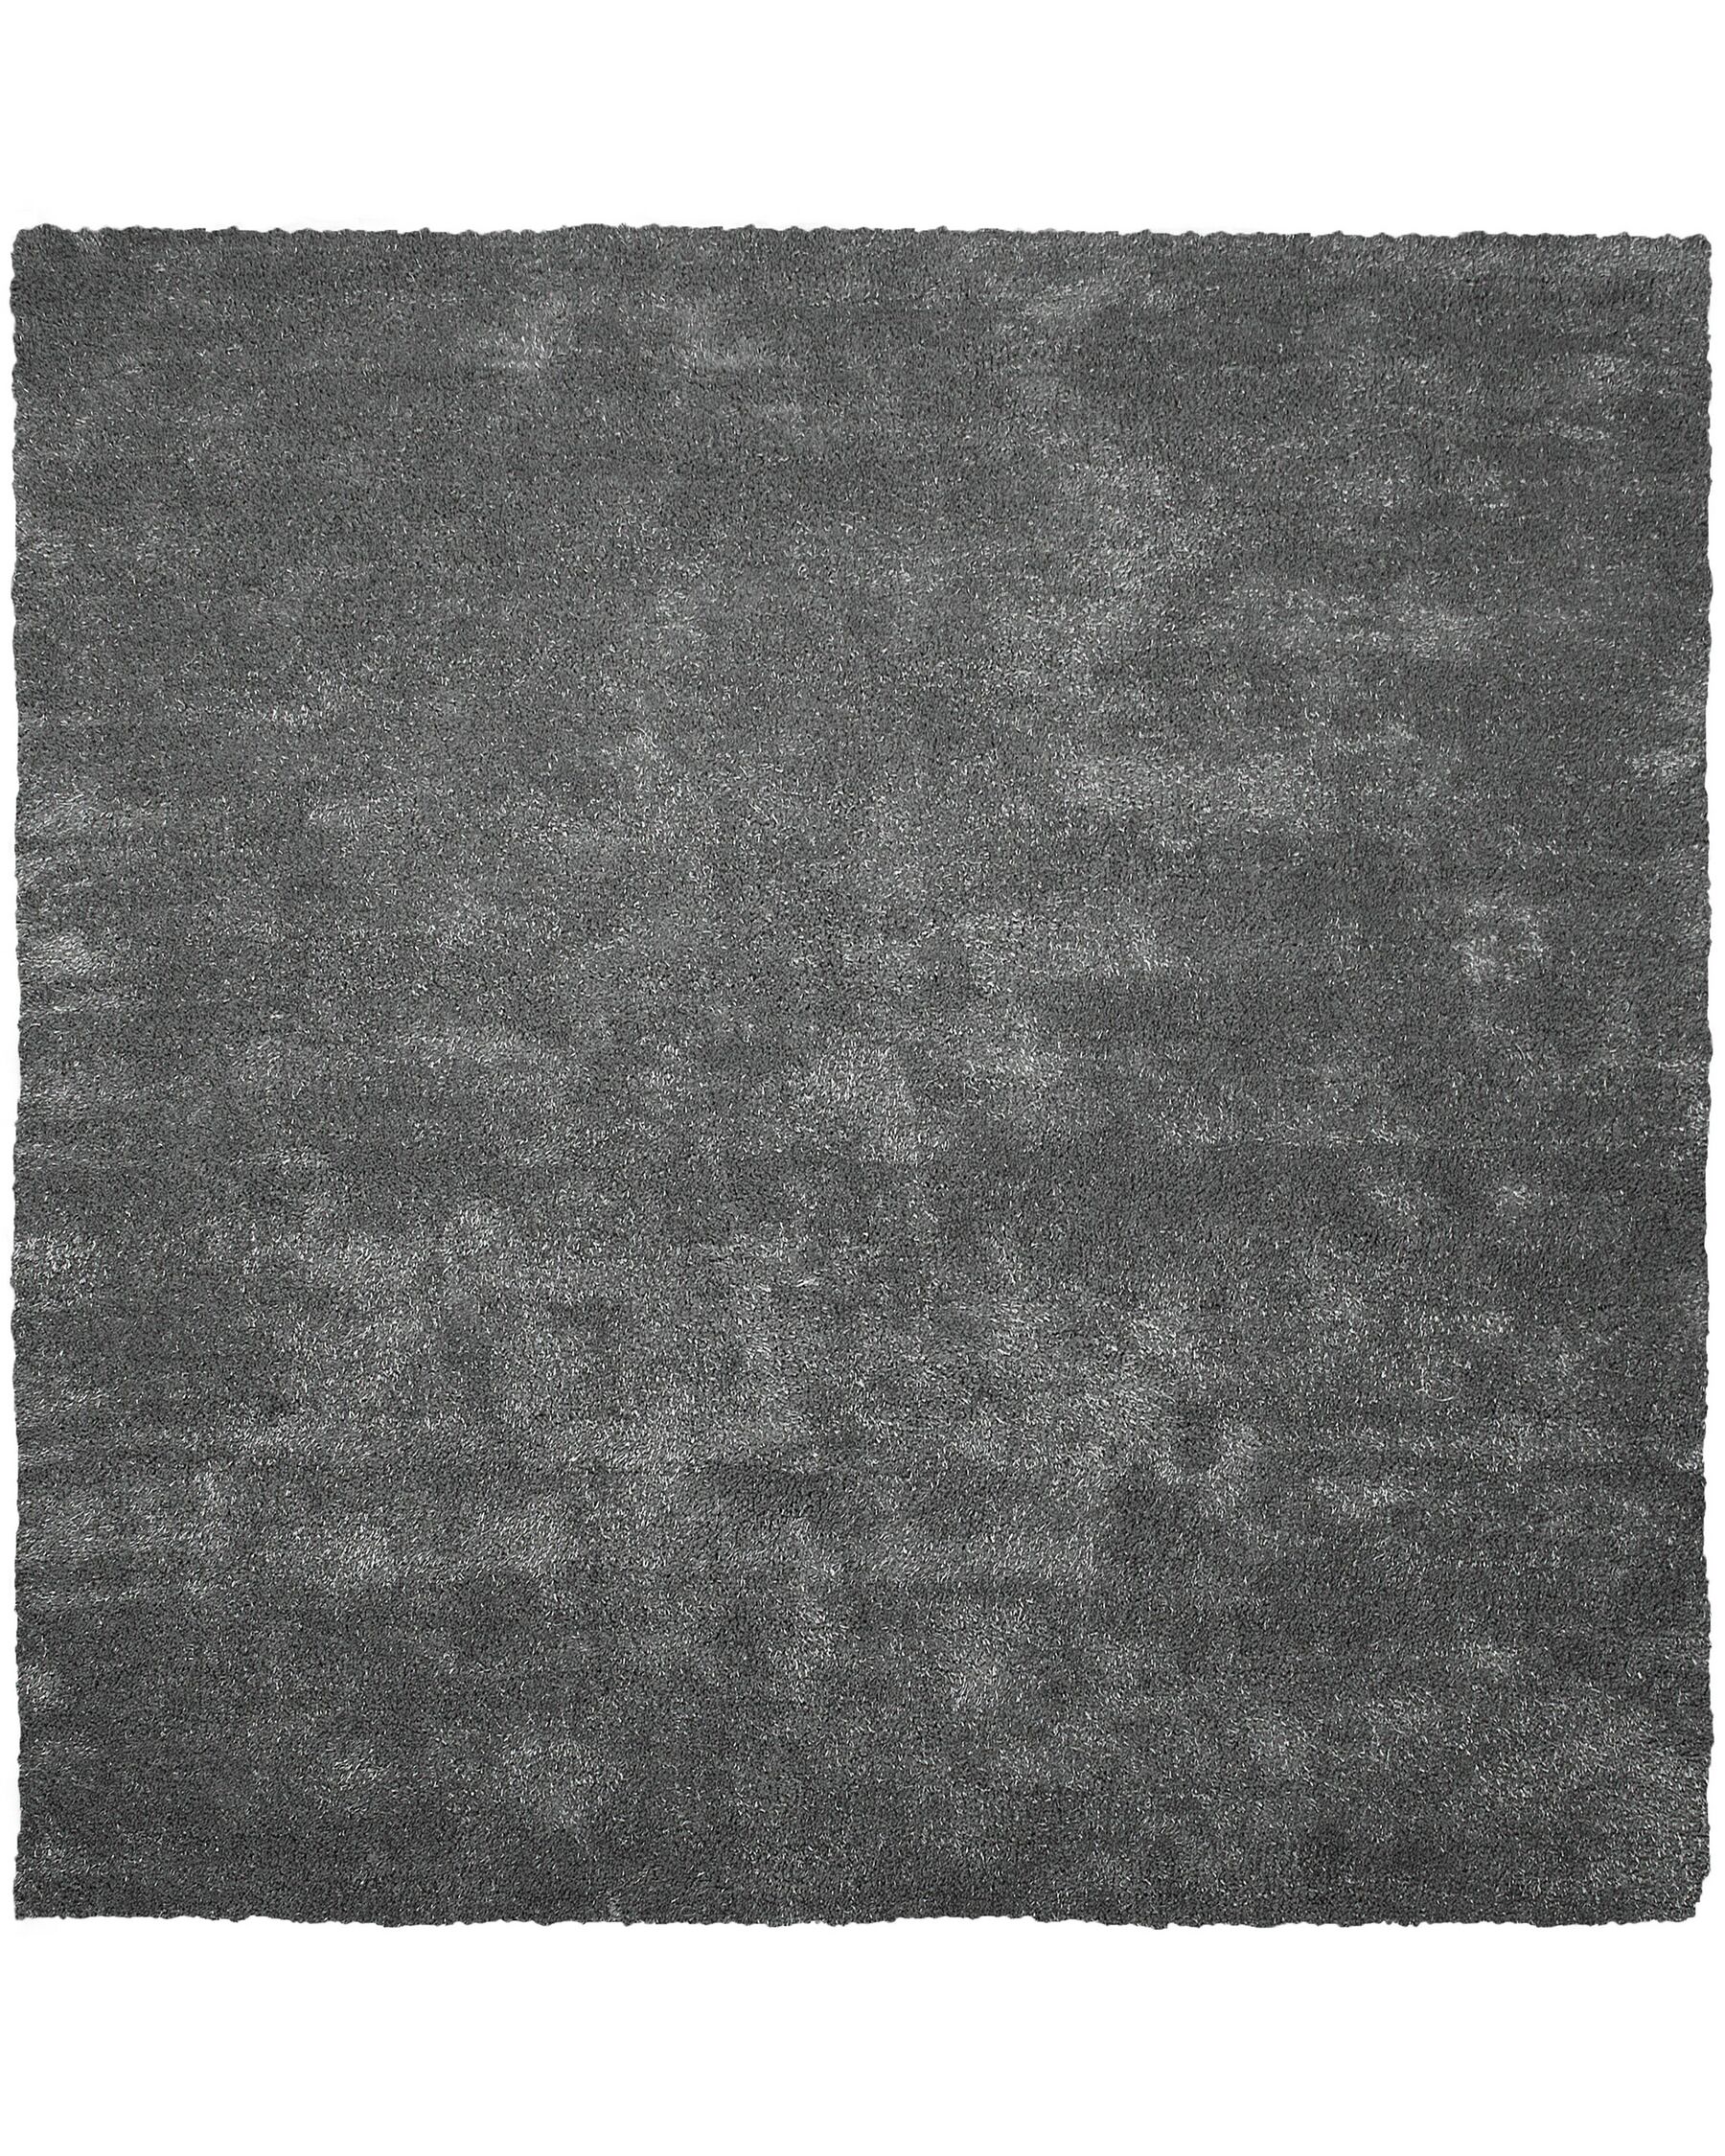 Tappeto shaggy grigio scuro 200 x 200 cm DEMRE_714805